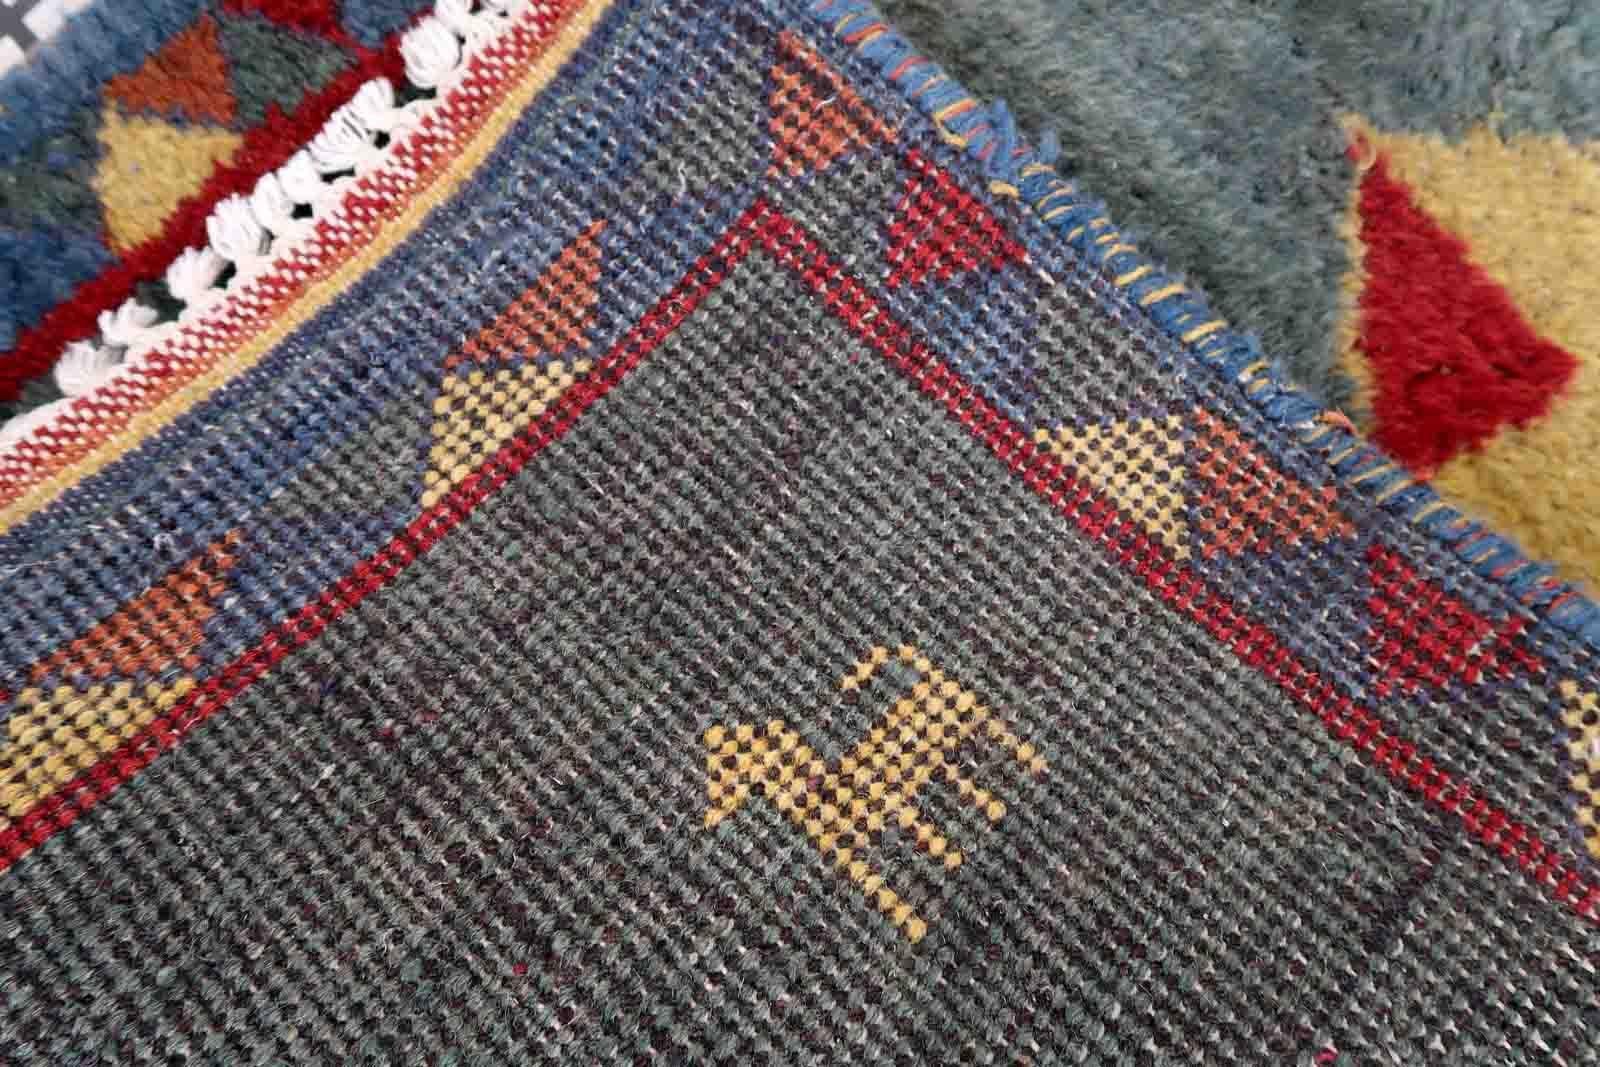 Tapis Gabbeh vintage fait à la main, de couleur vert marin. Le tapis est de la fin du 20ème siècle en bon état d'origine.

-condition : original bon,

-circa : 1970,

-Taille : 2,4' x 4,5' (75cm x 139cm),

-Matériau : laine,

-pays